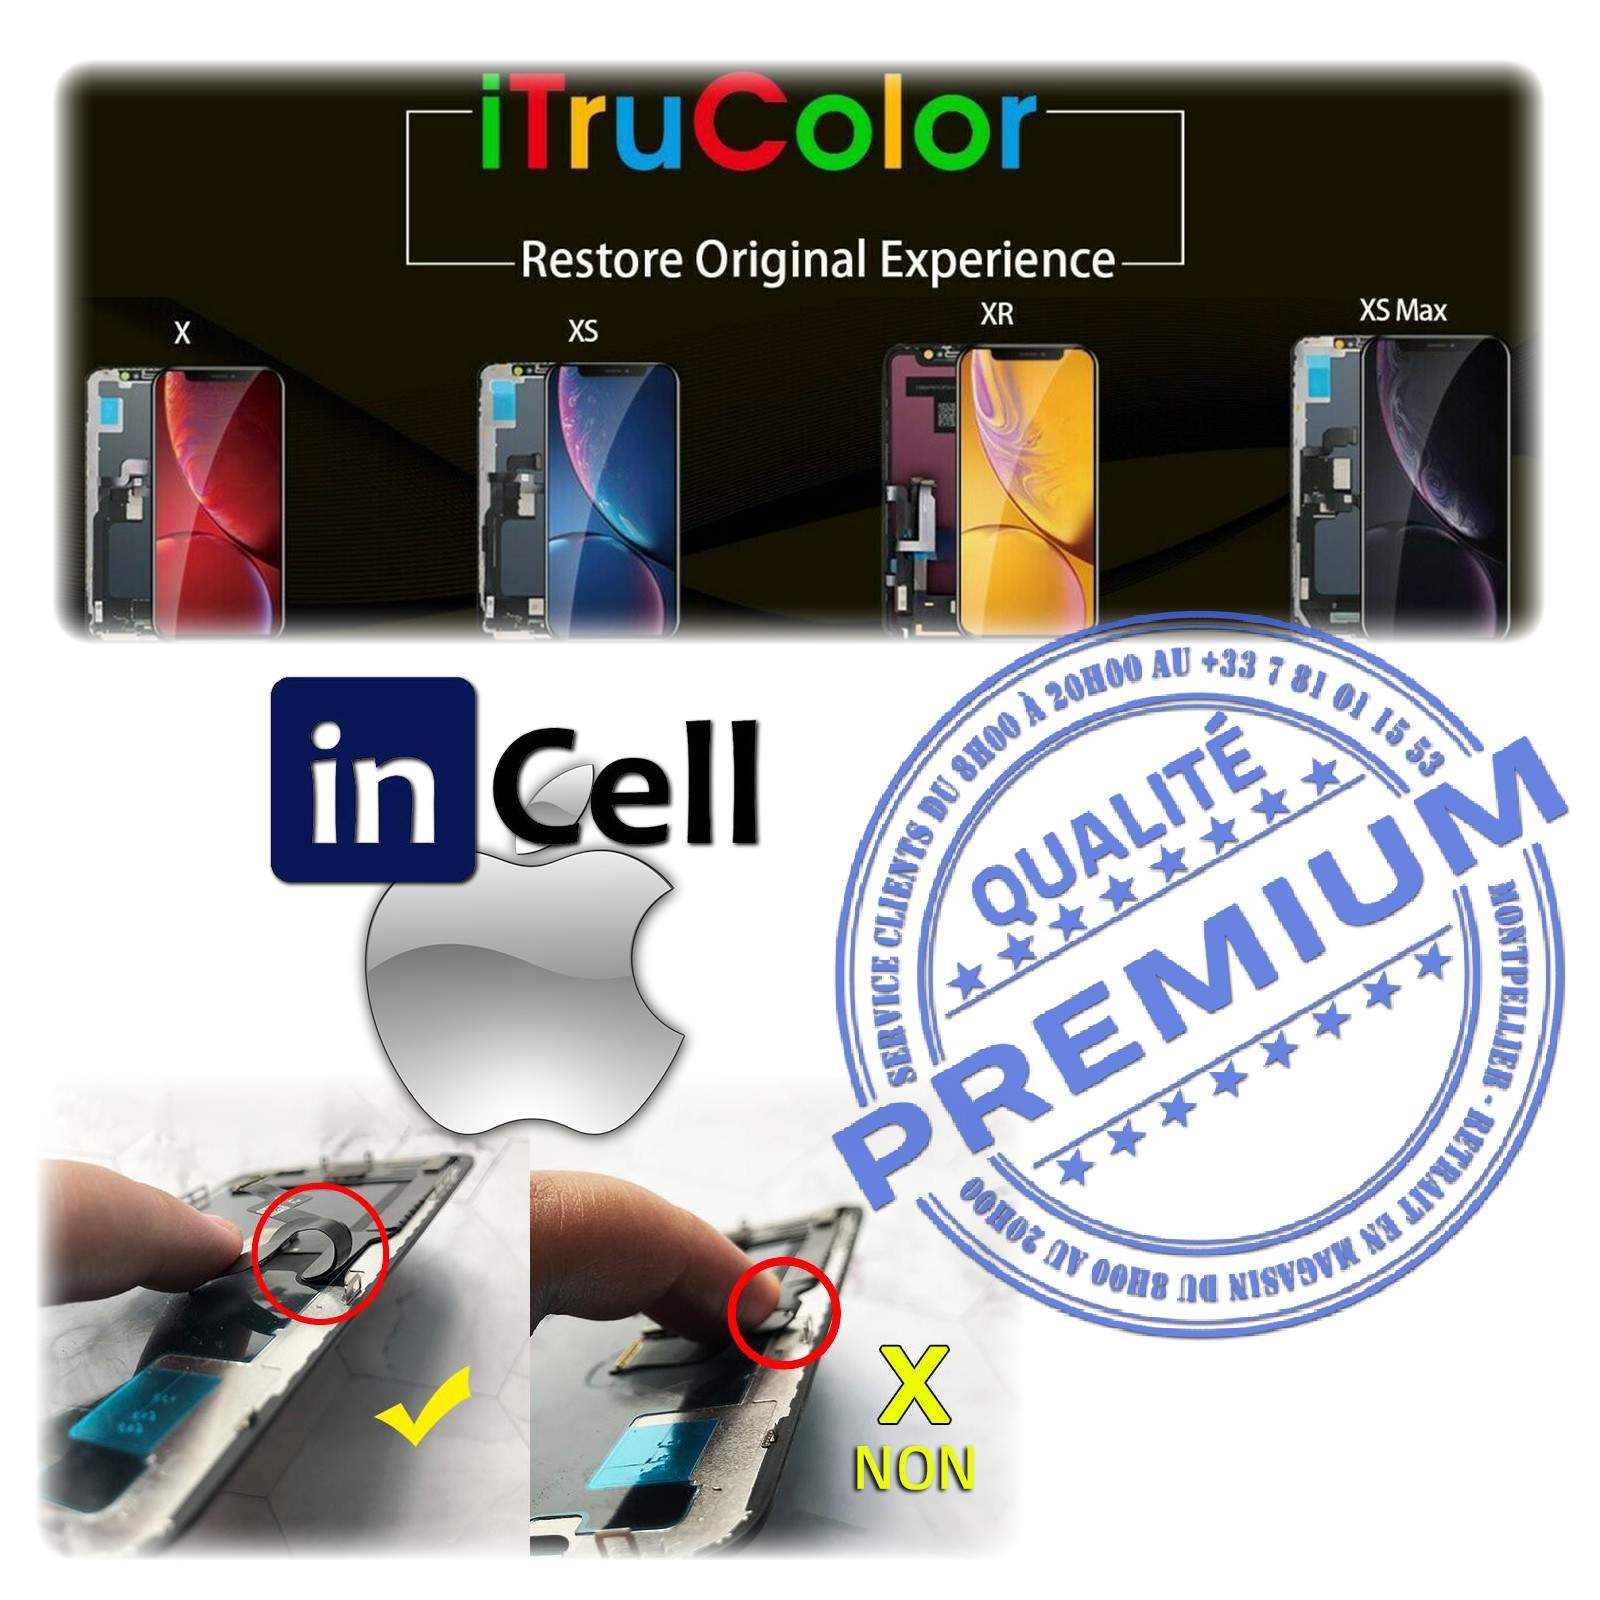 Verre Multi-Touch inCELL iPhone XR Apple Changer Écran LCD PREMIUM SmartPhone 3D Touch Remplacement Cristaux Liquides iTruColor